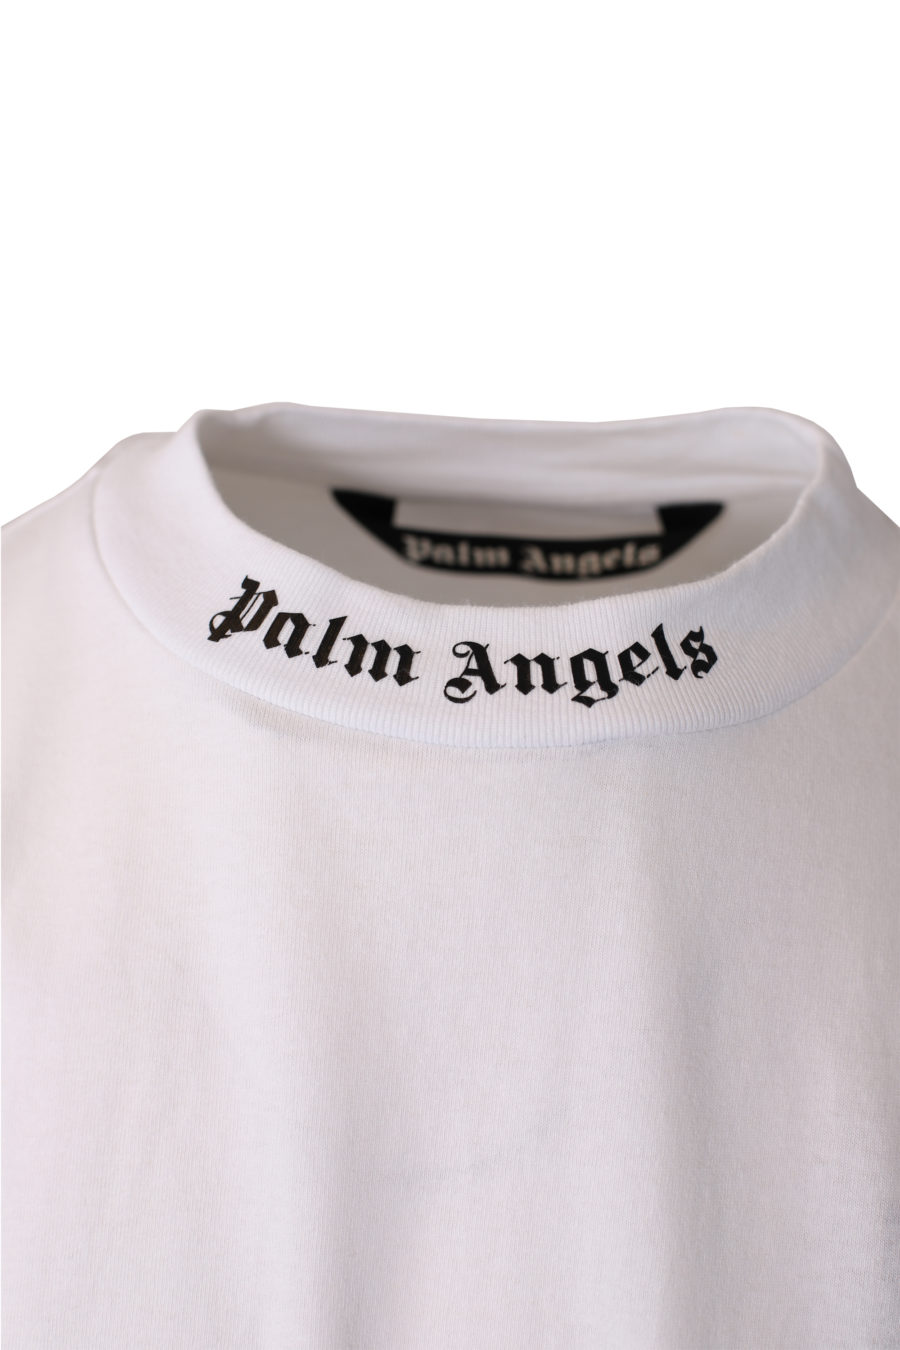 Camiseta blanca oversize con logotipo en el cuello - IMG 1046